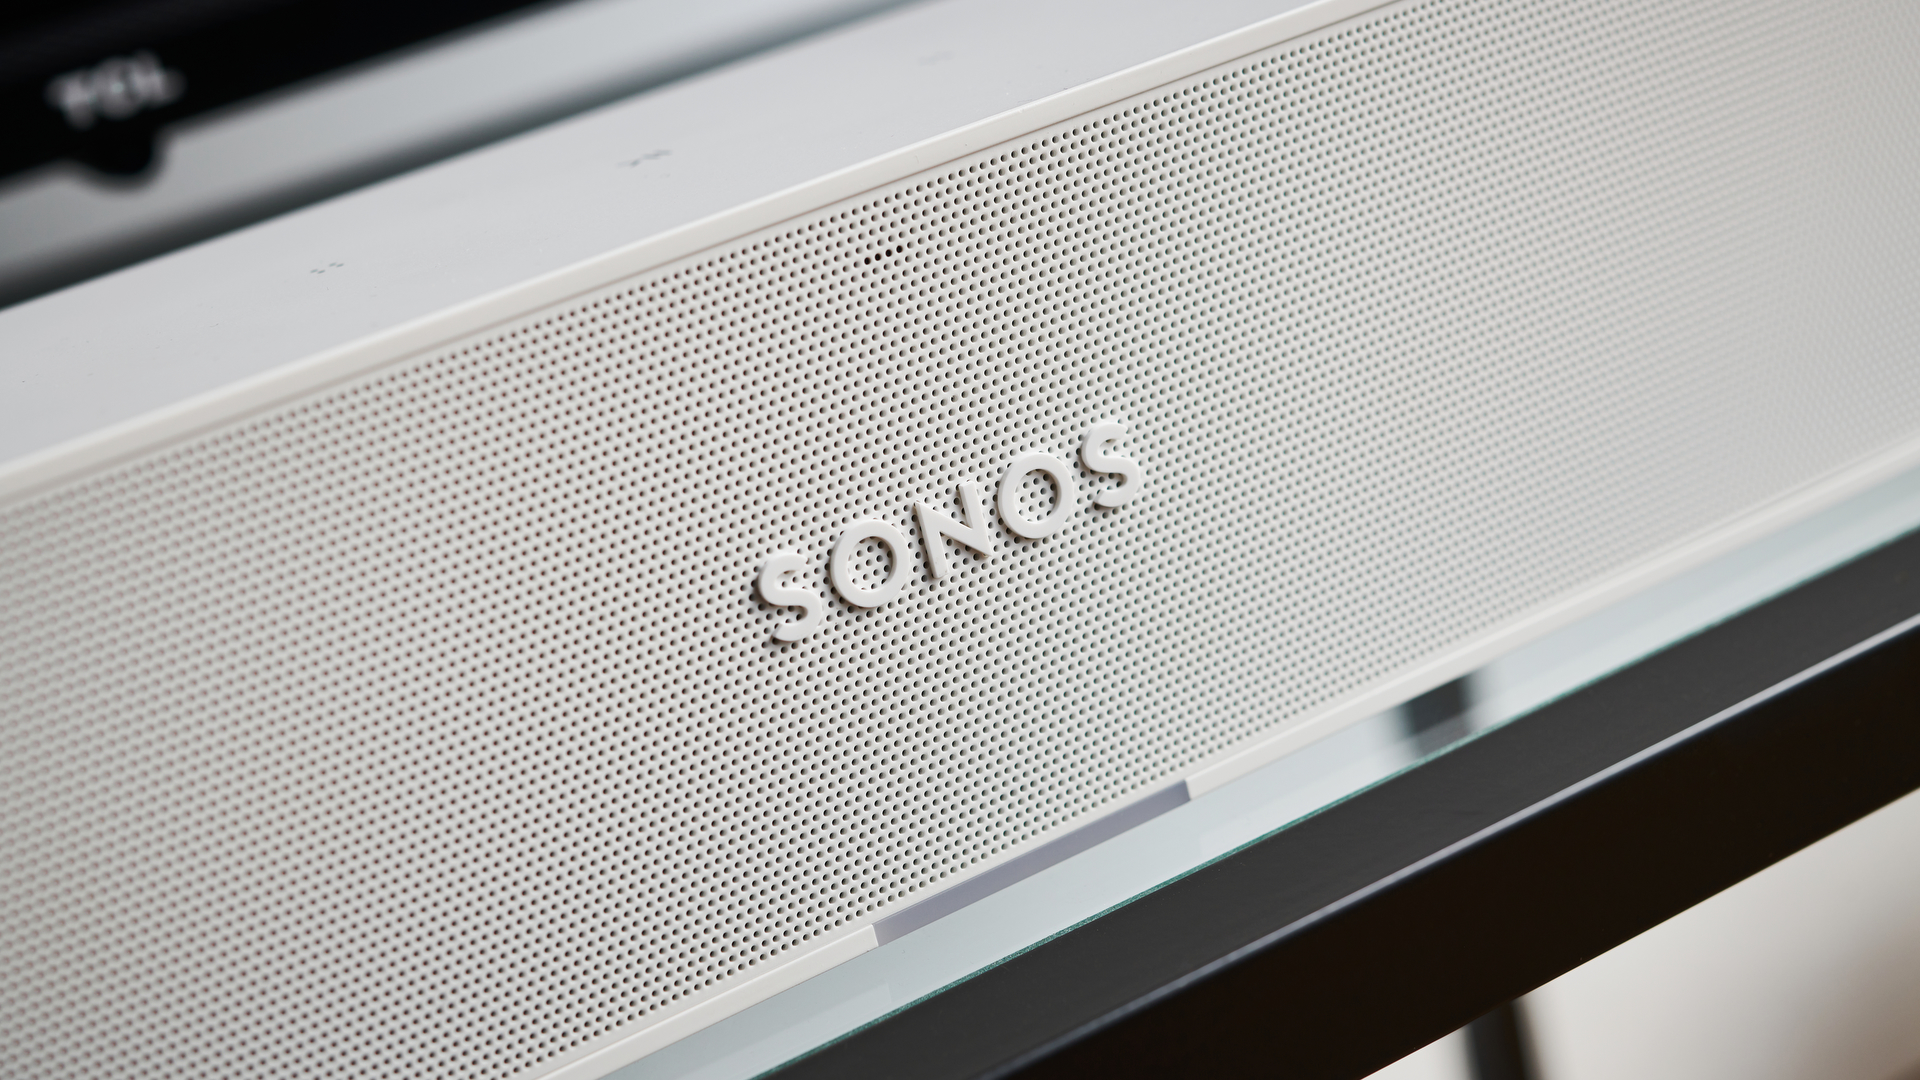 Sonos отправил людям слишком много колонок, чтобы они испортились, а затем попросил их вернуть